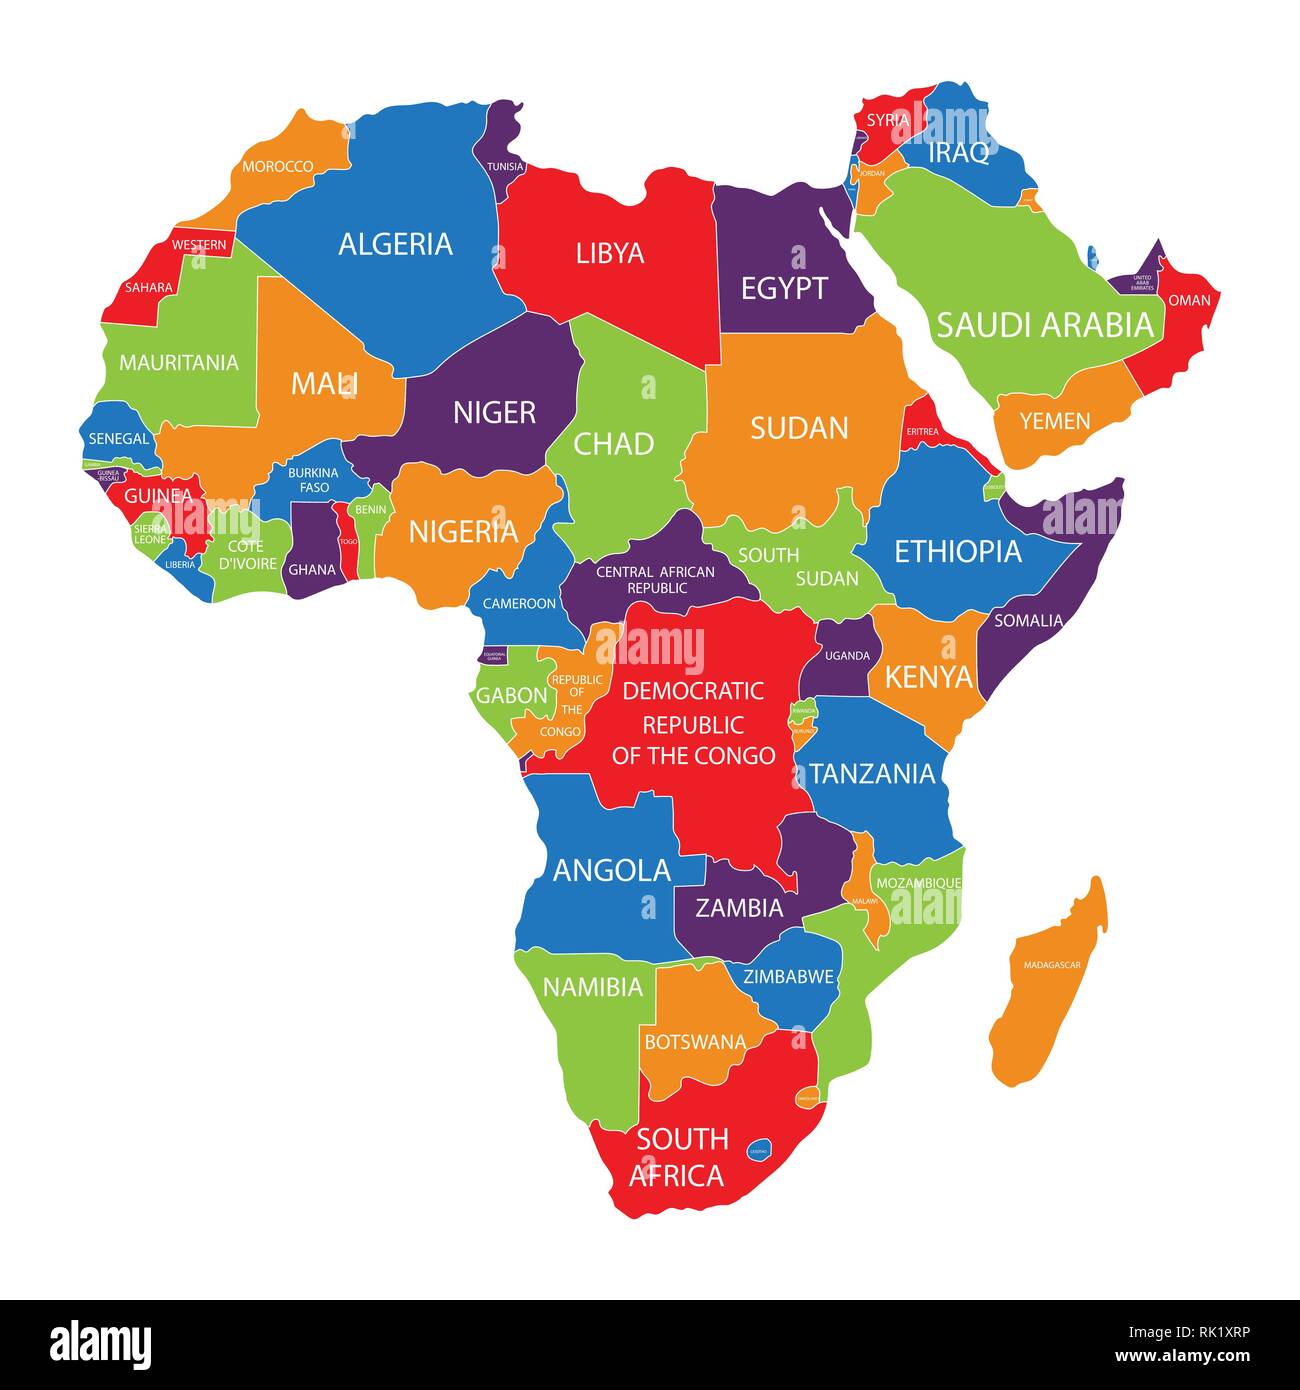 Mapa De Africa Con Nombres Y Division Politica Para I 8784